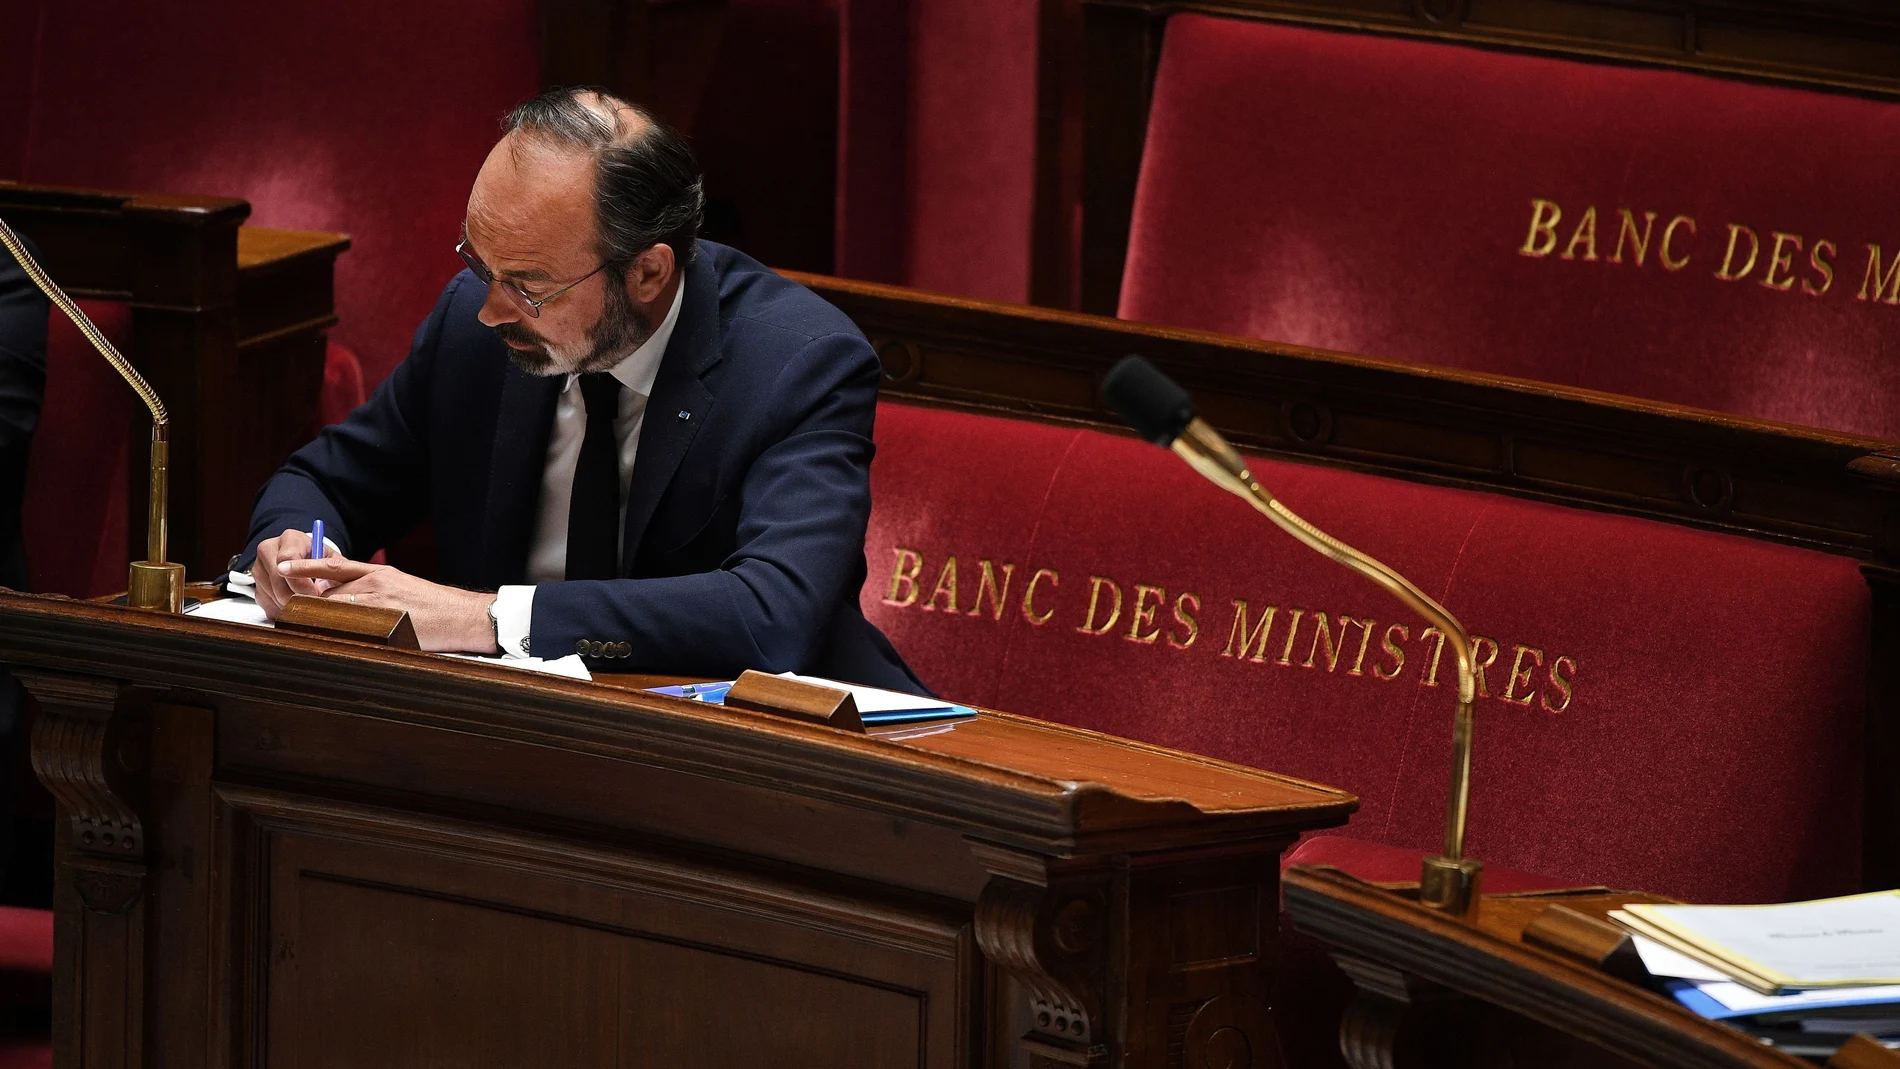 El primer ministro francés, Édouard Philippe, presentó este martes ante la Asamblea Nacional la hoja de ruta del Gobierno para volver a la normalidad